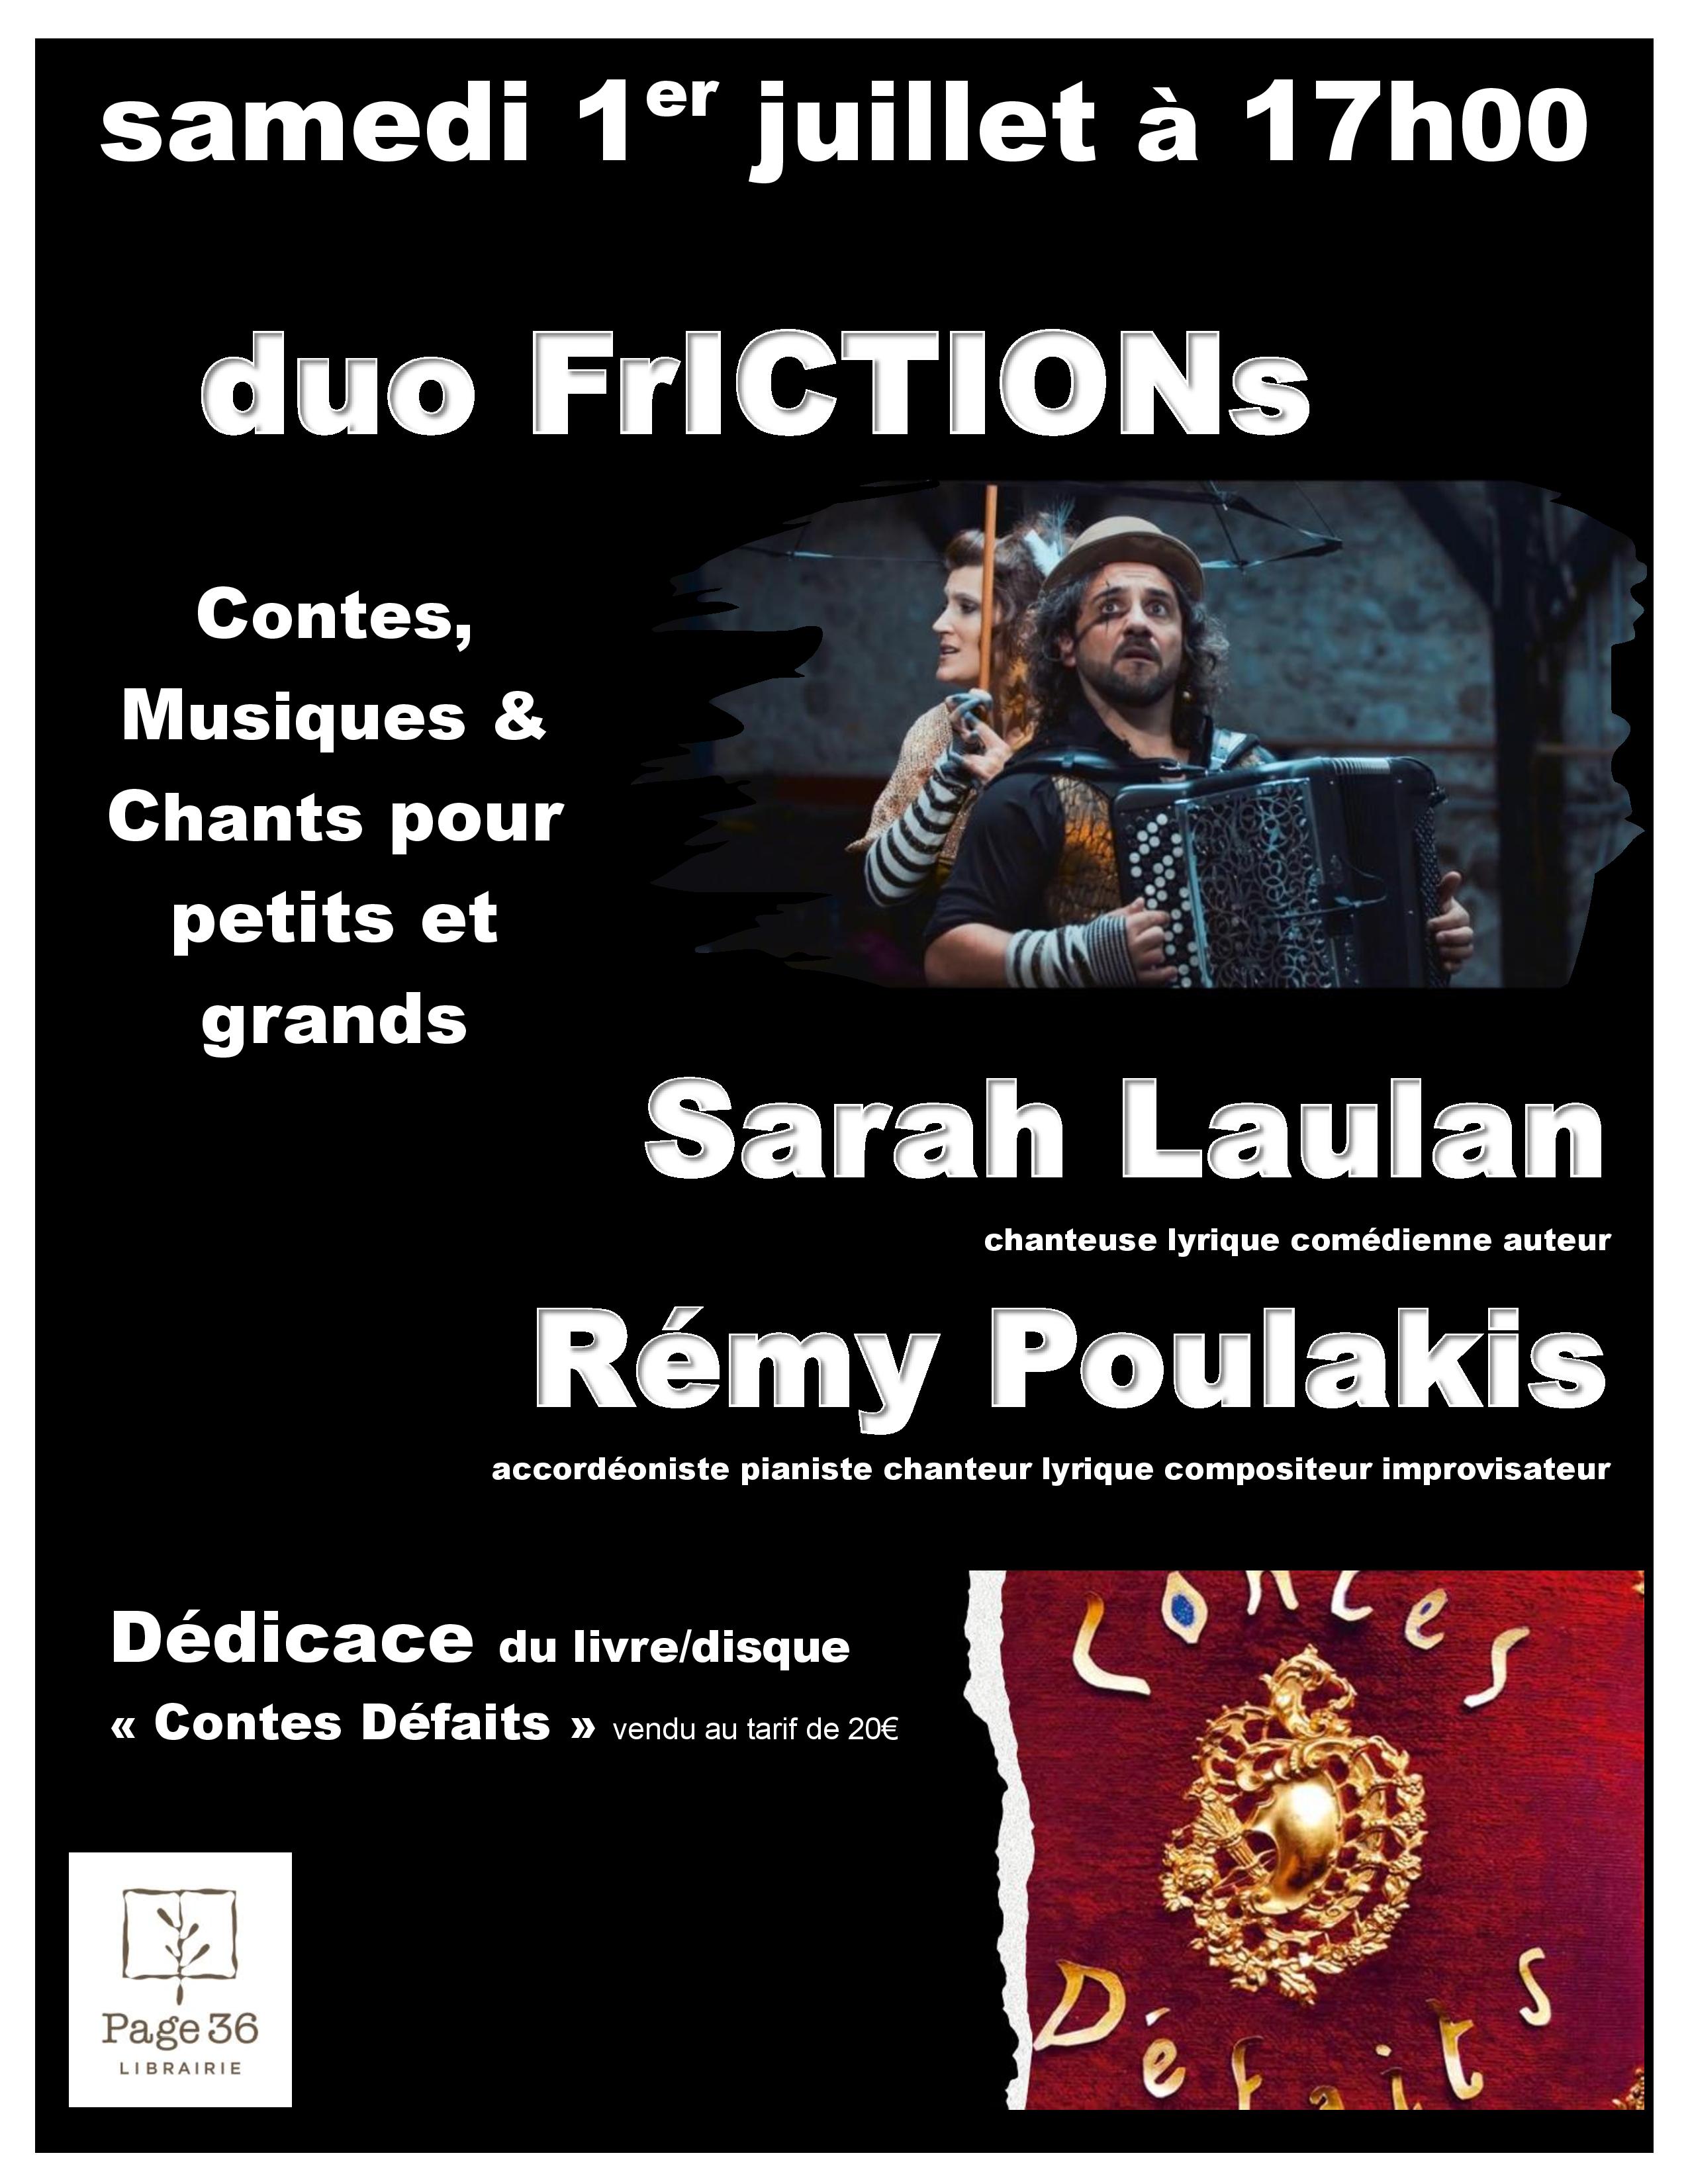 duo FrICTIONs : Sarah Laulan & Rémy Poulakis